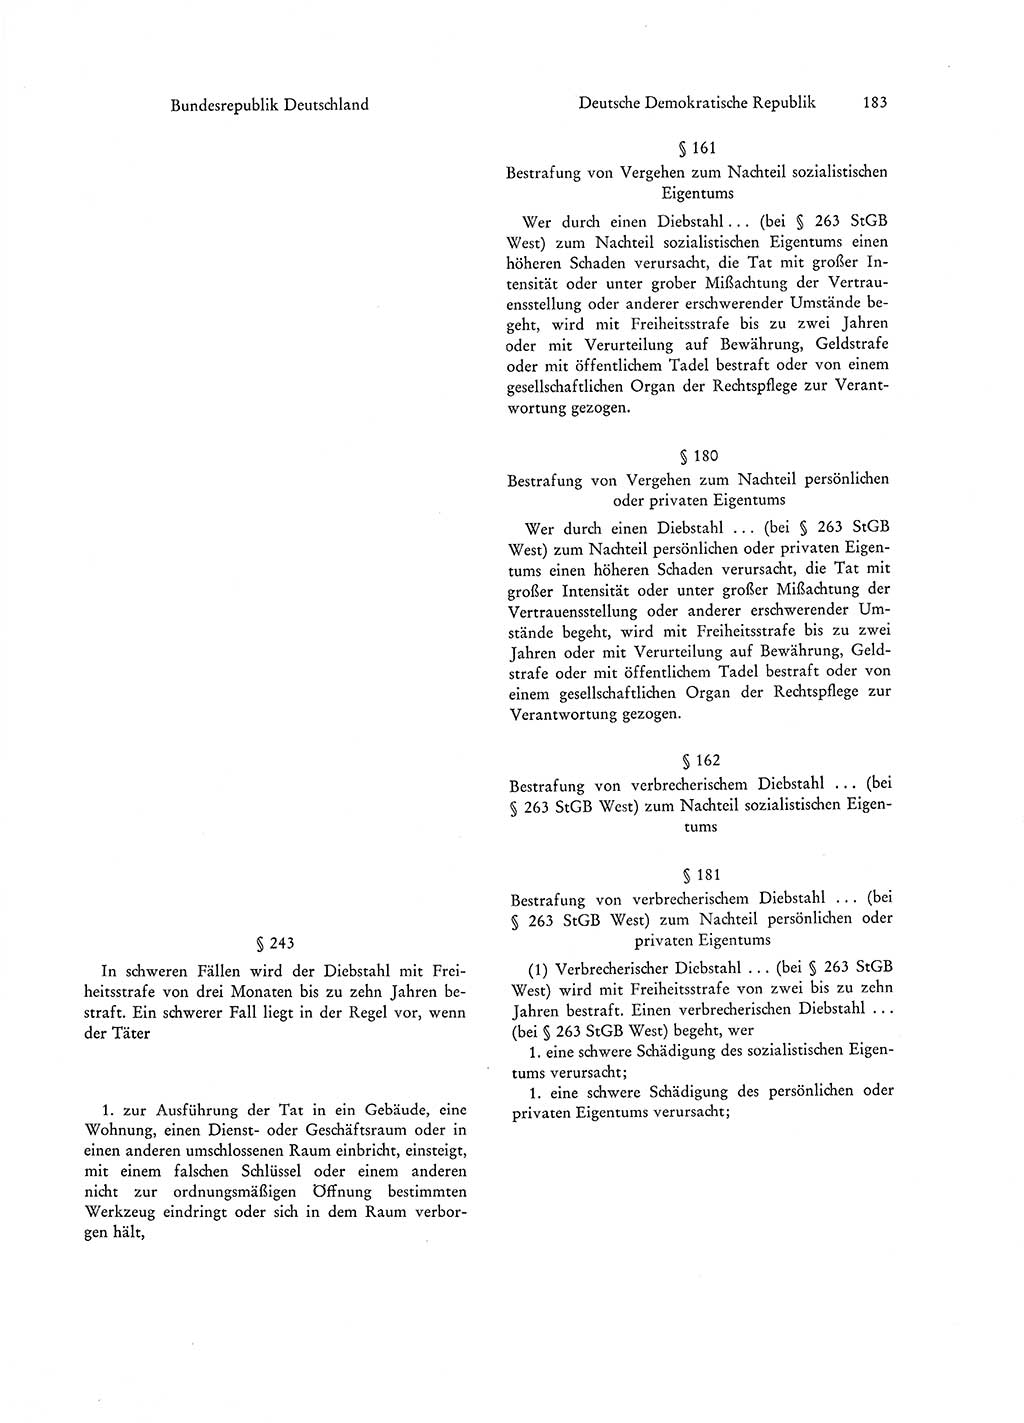 Strafgesetzgebung in Deutschland [Bundesrepublik Deutschland (BRD) und Deutsche Demokratische Republik (DDR)] 1972, Seite 183 (Str.-Ges. Dtl. StGB BRD DDR 1972, S. 183)